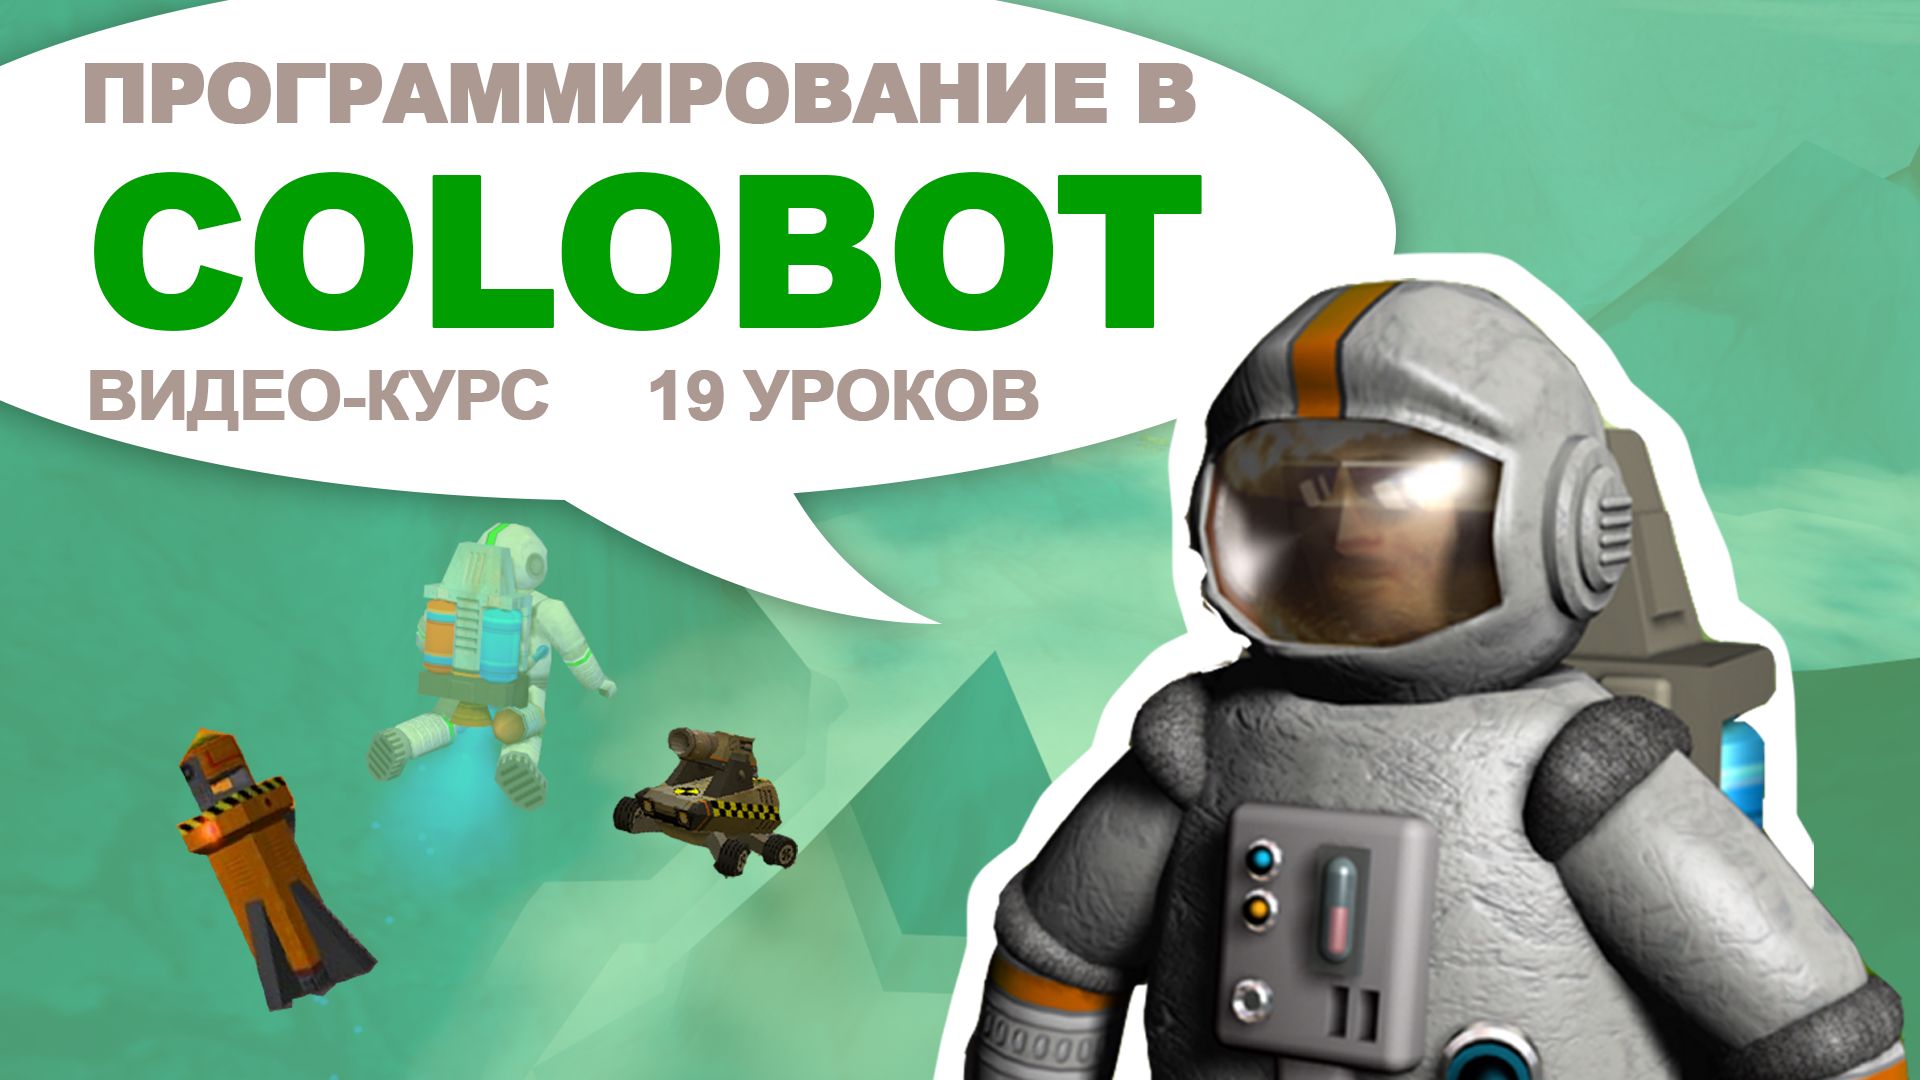 Online-курс для детей "Программирование в Colobot" (19 уроков)